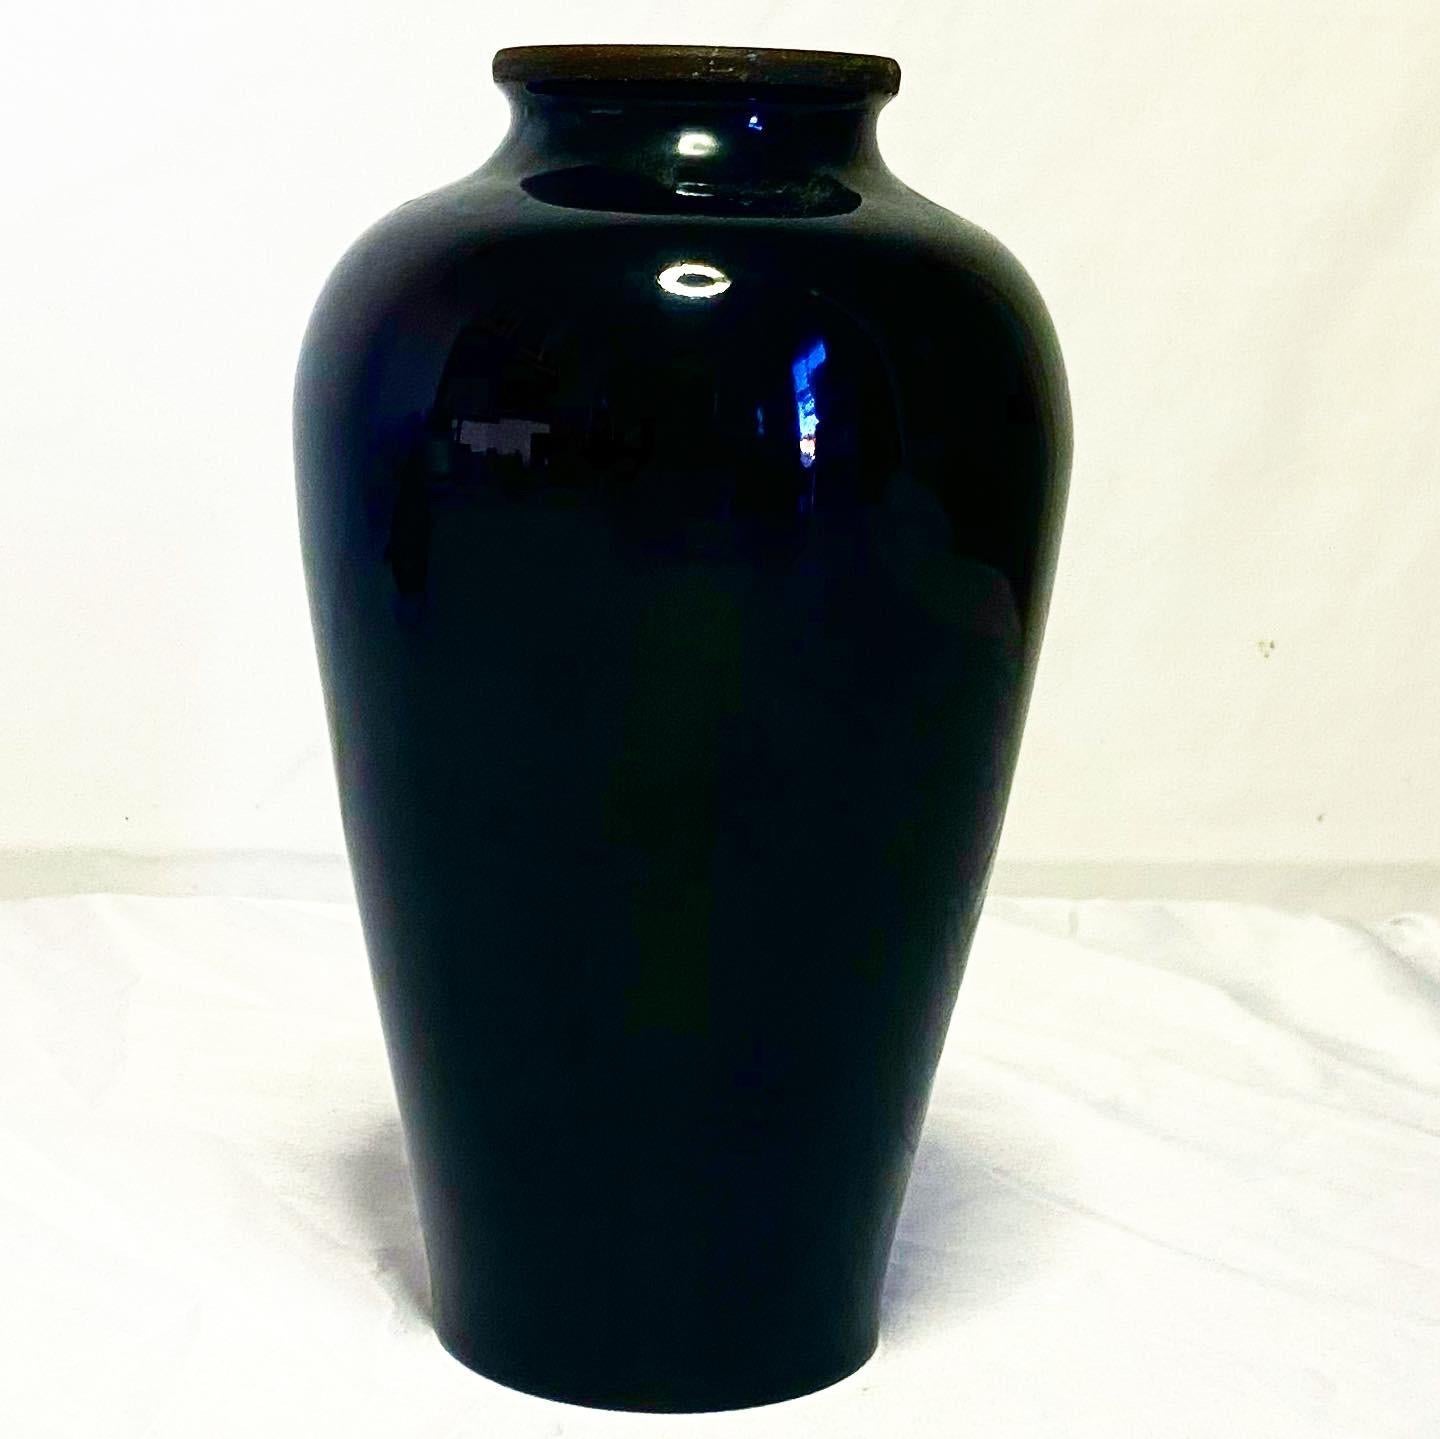 Magnifique vase asiatique en laiton avec finition en émail noir incrusté de fleurs en nacre.
